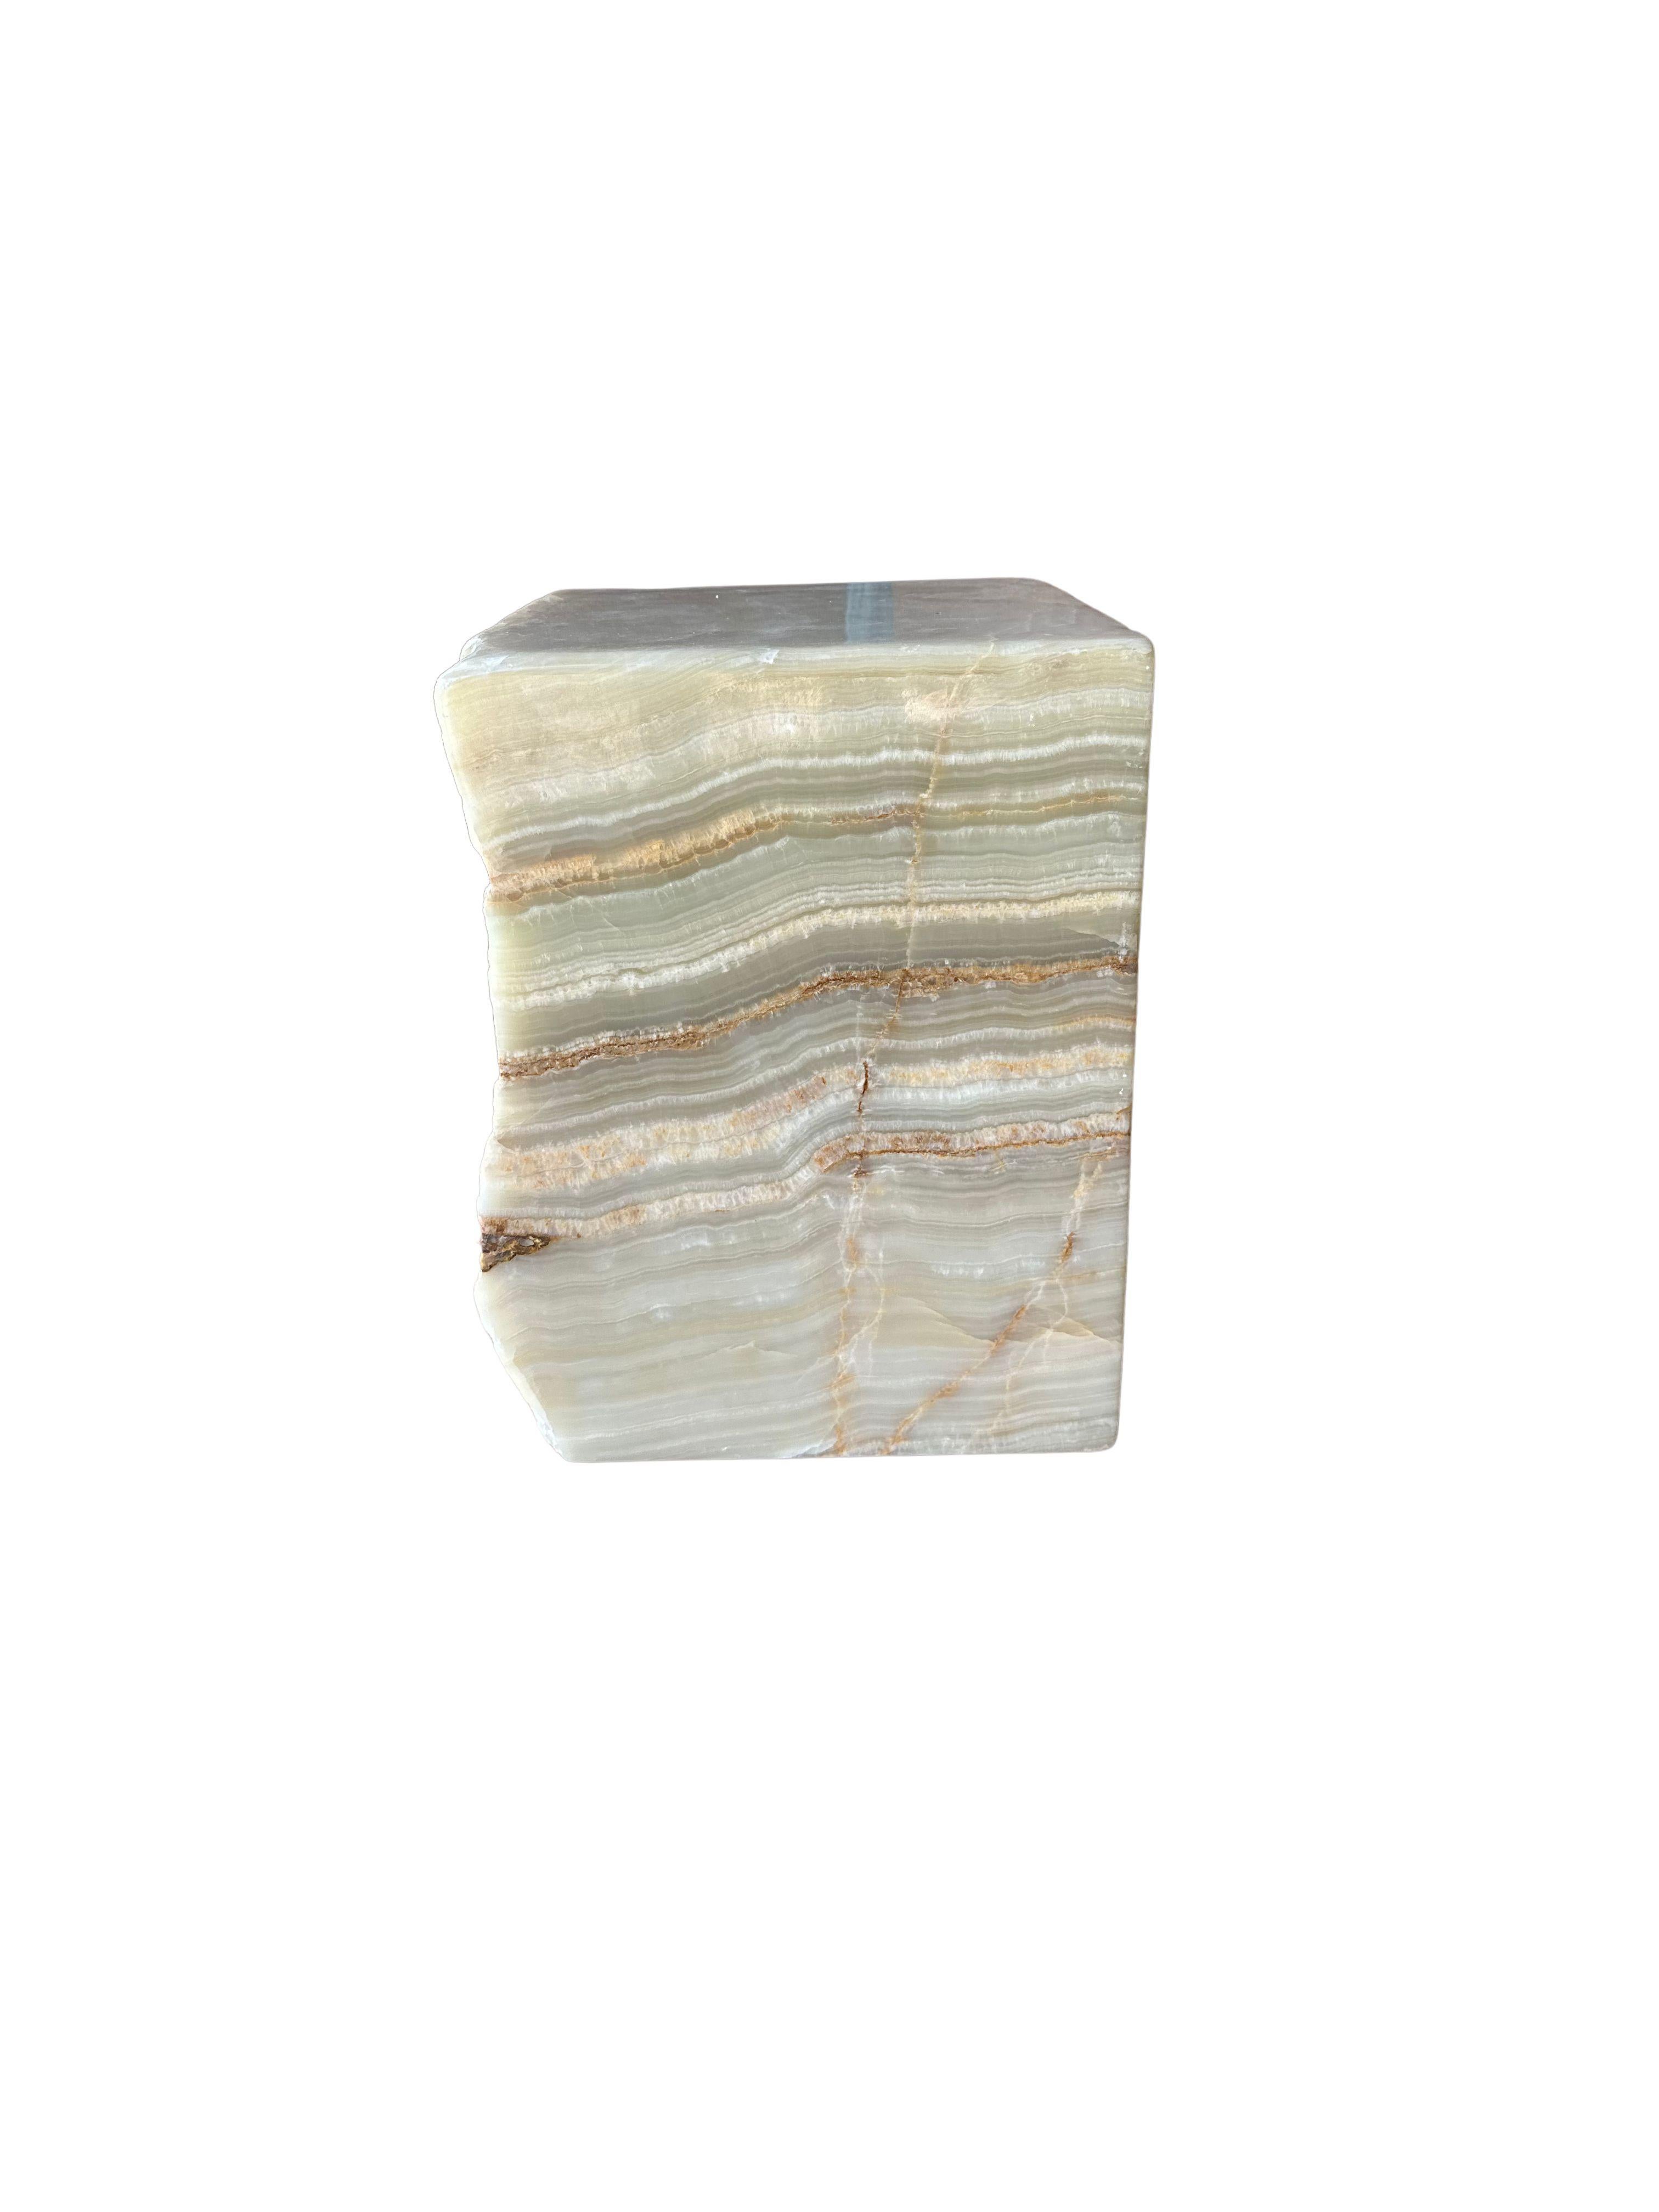 Ein massiver Marmorblock aus Jupiter Onyx, der sich wunderbar als Beistelltisch oder Sockel eignet. Dieses rohe und organische Objekt von der Insel Sumatra mit einem jadegrünen Unterton zeichnet sich durch eine atemberaubende Mischung aus Texturen